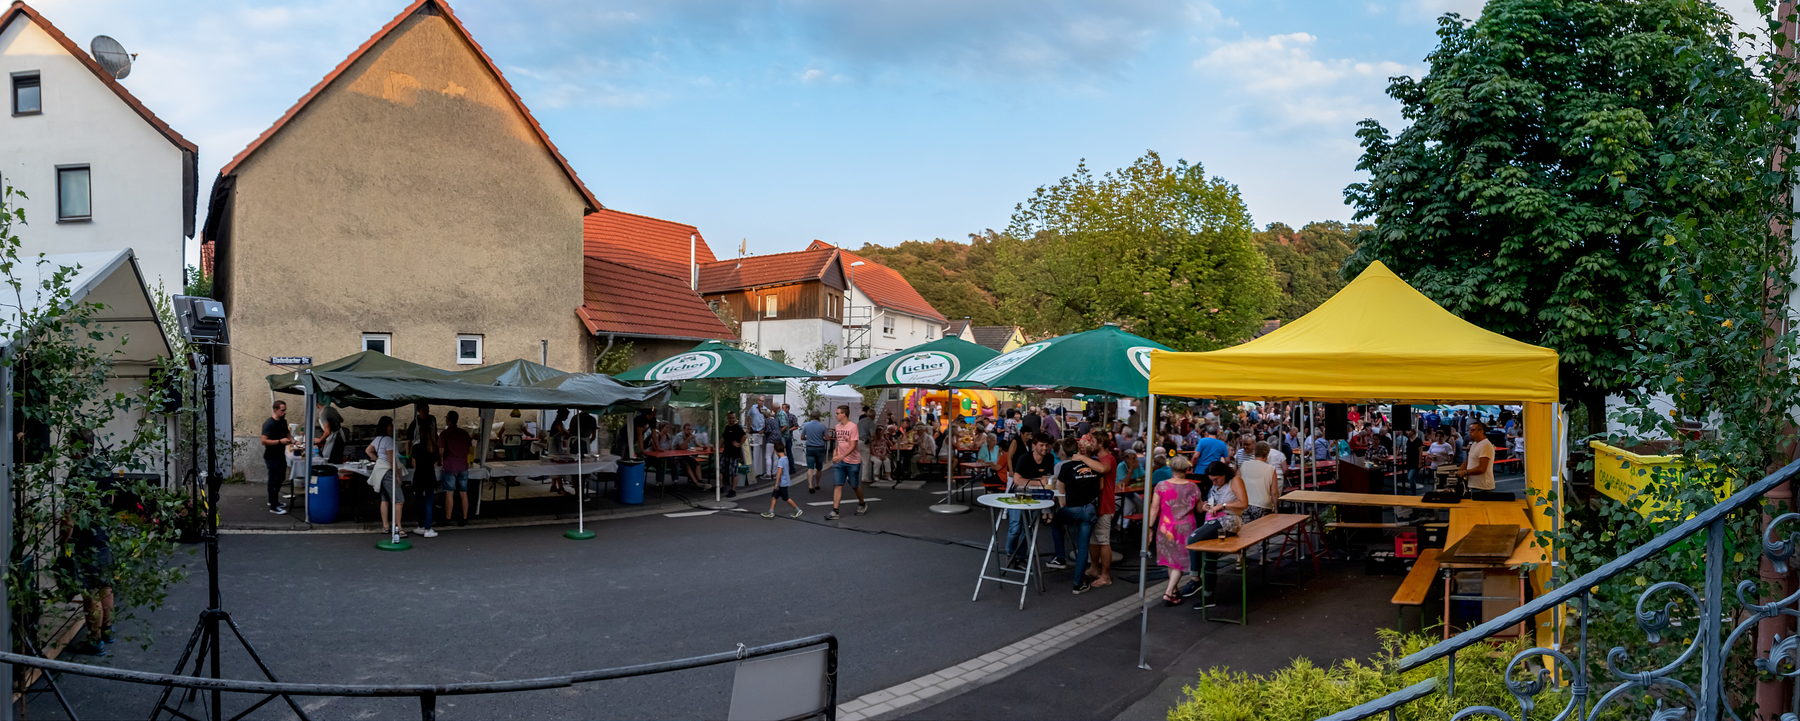 2019-08-24 - Brunnenfest 04.jpg